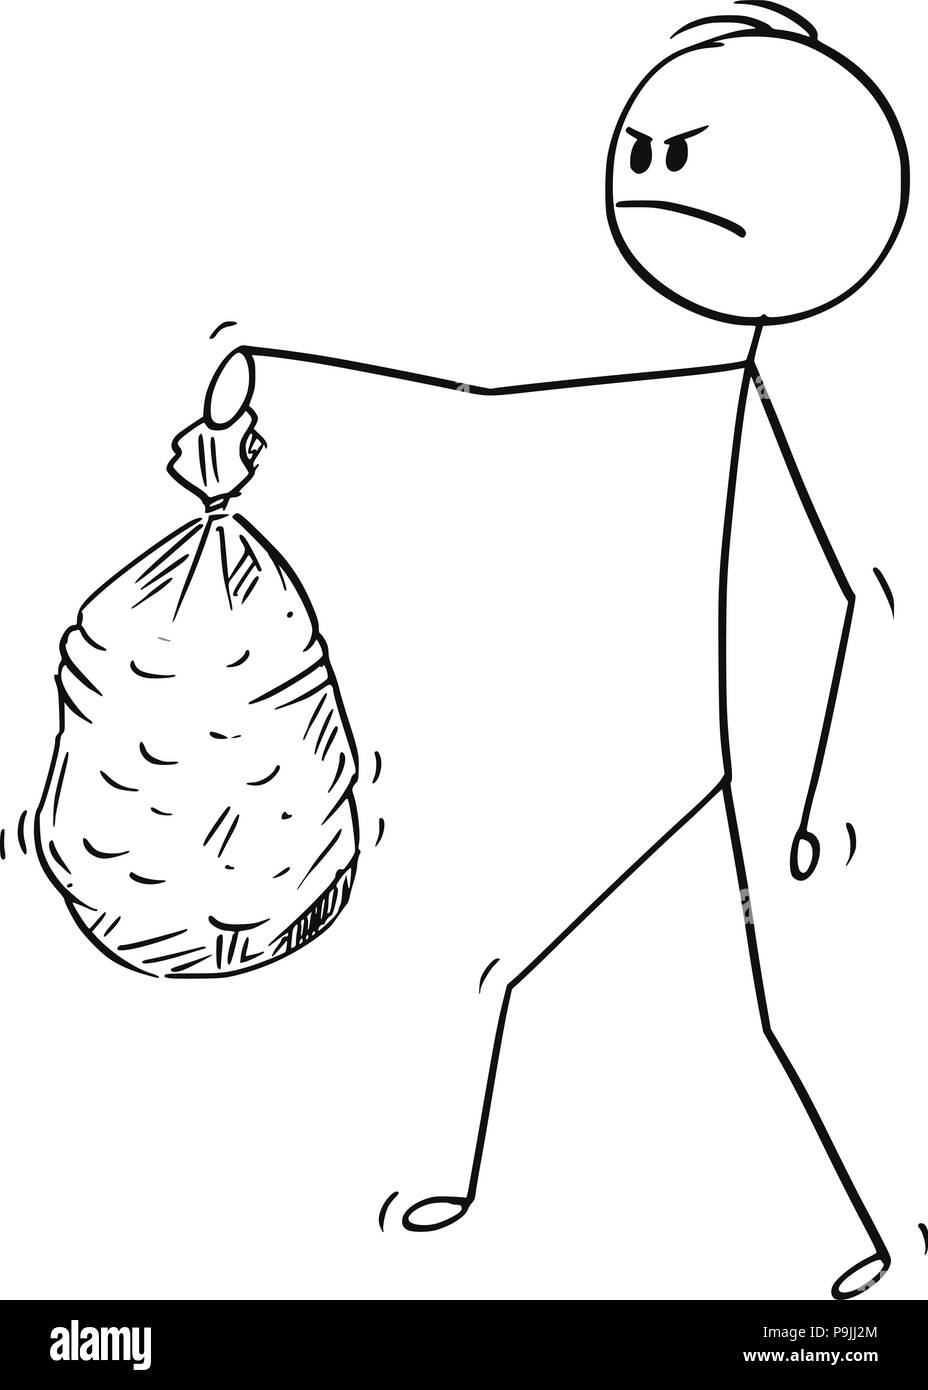 Caricature de l'homme colère exerçant son sac de déchets plastiques Illustration de Vecteur